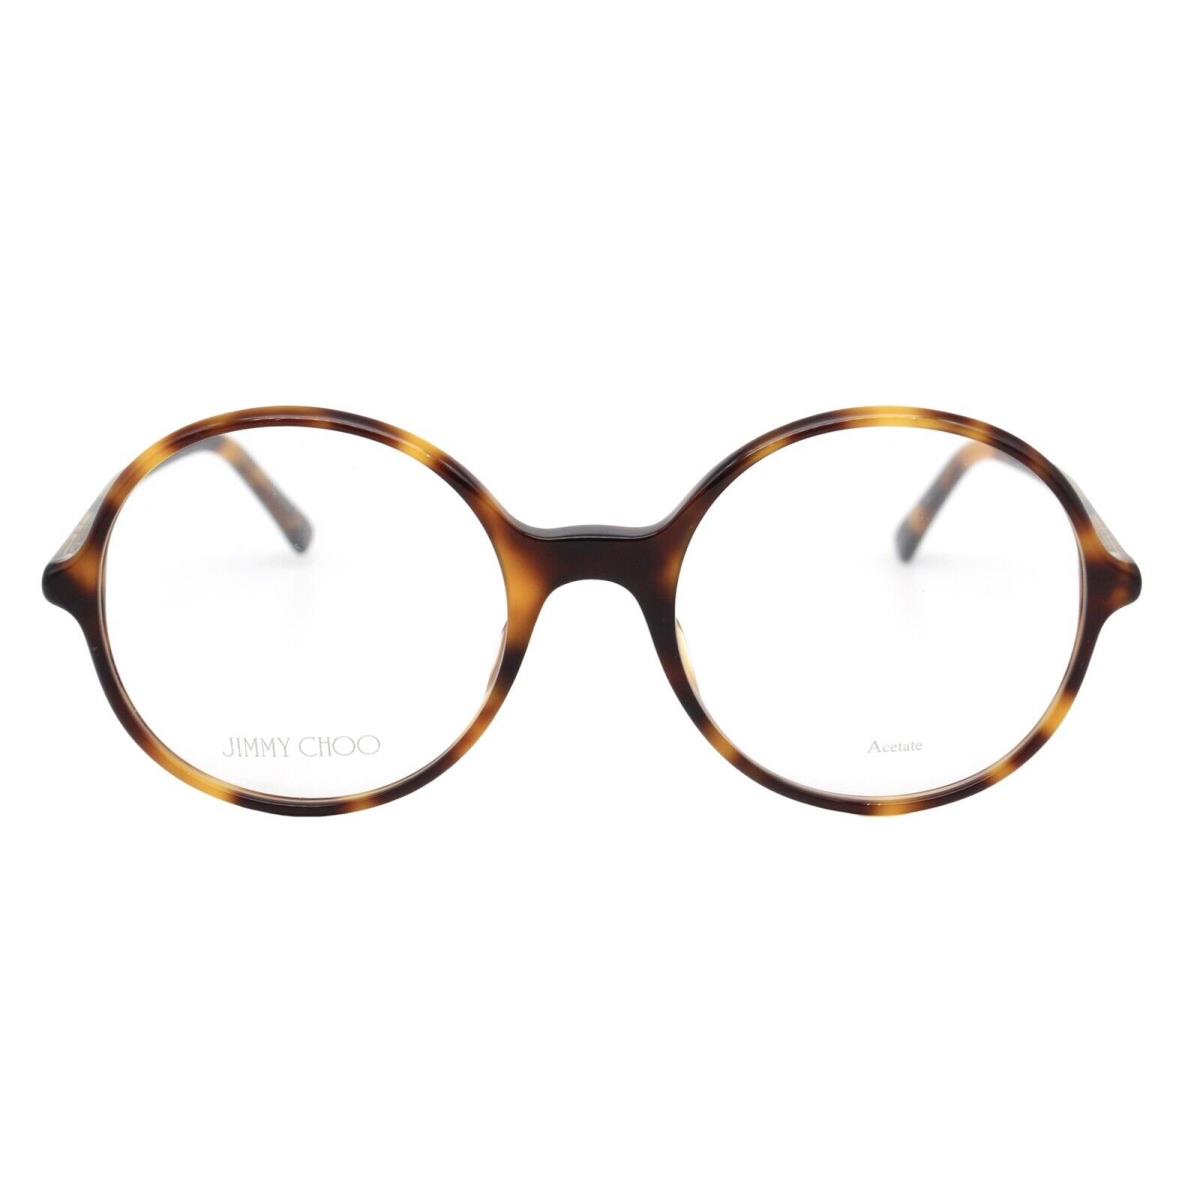 Jimmy Choo eyeglasses  - Frame: Tortoise Gold 1